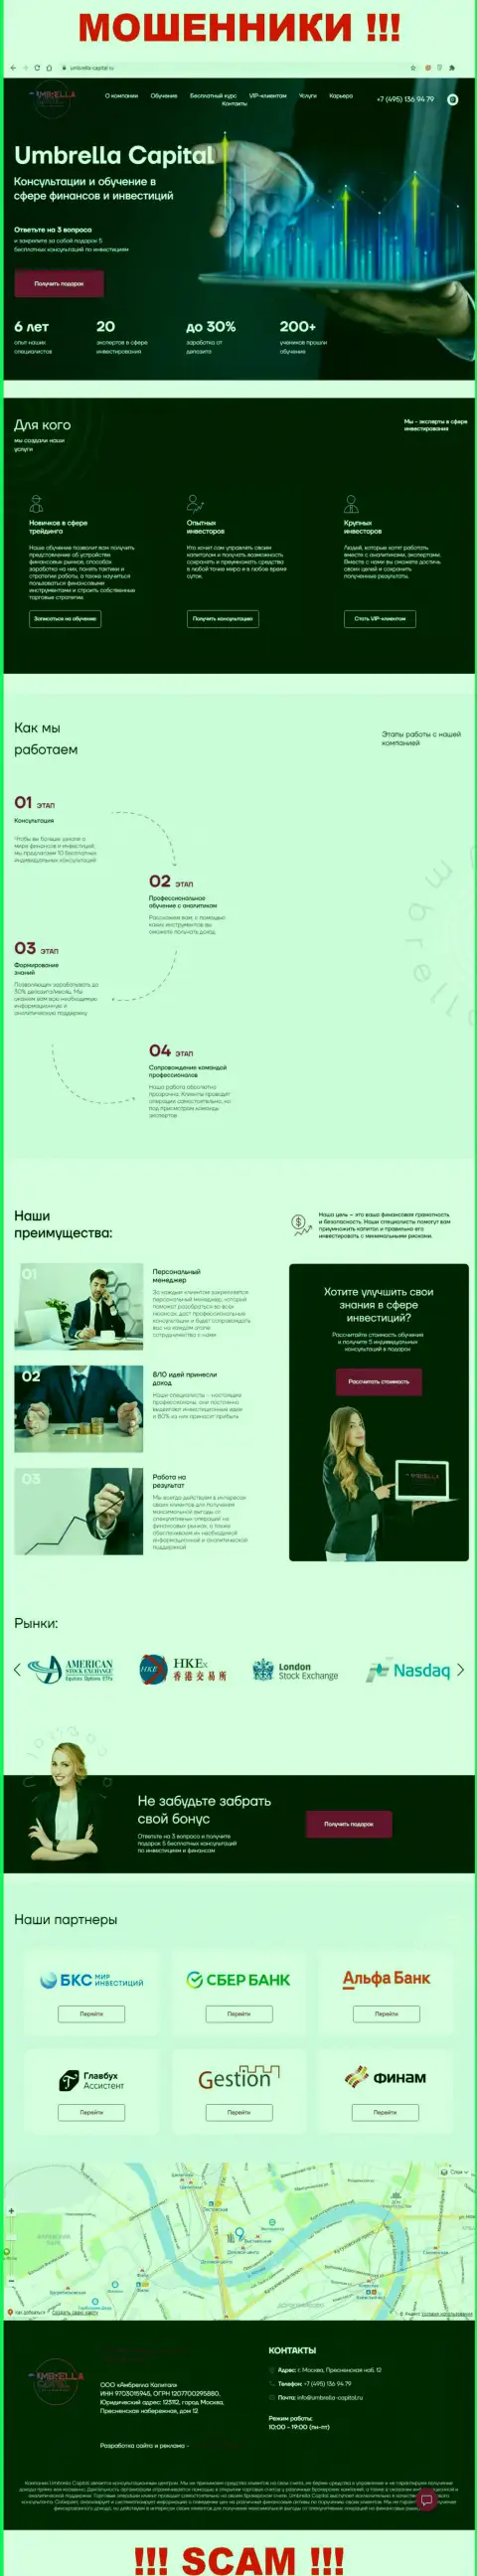 Вид официального web-сервиса мошеннической организации Umbrella-Capital Ru